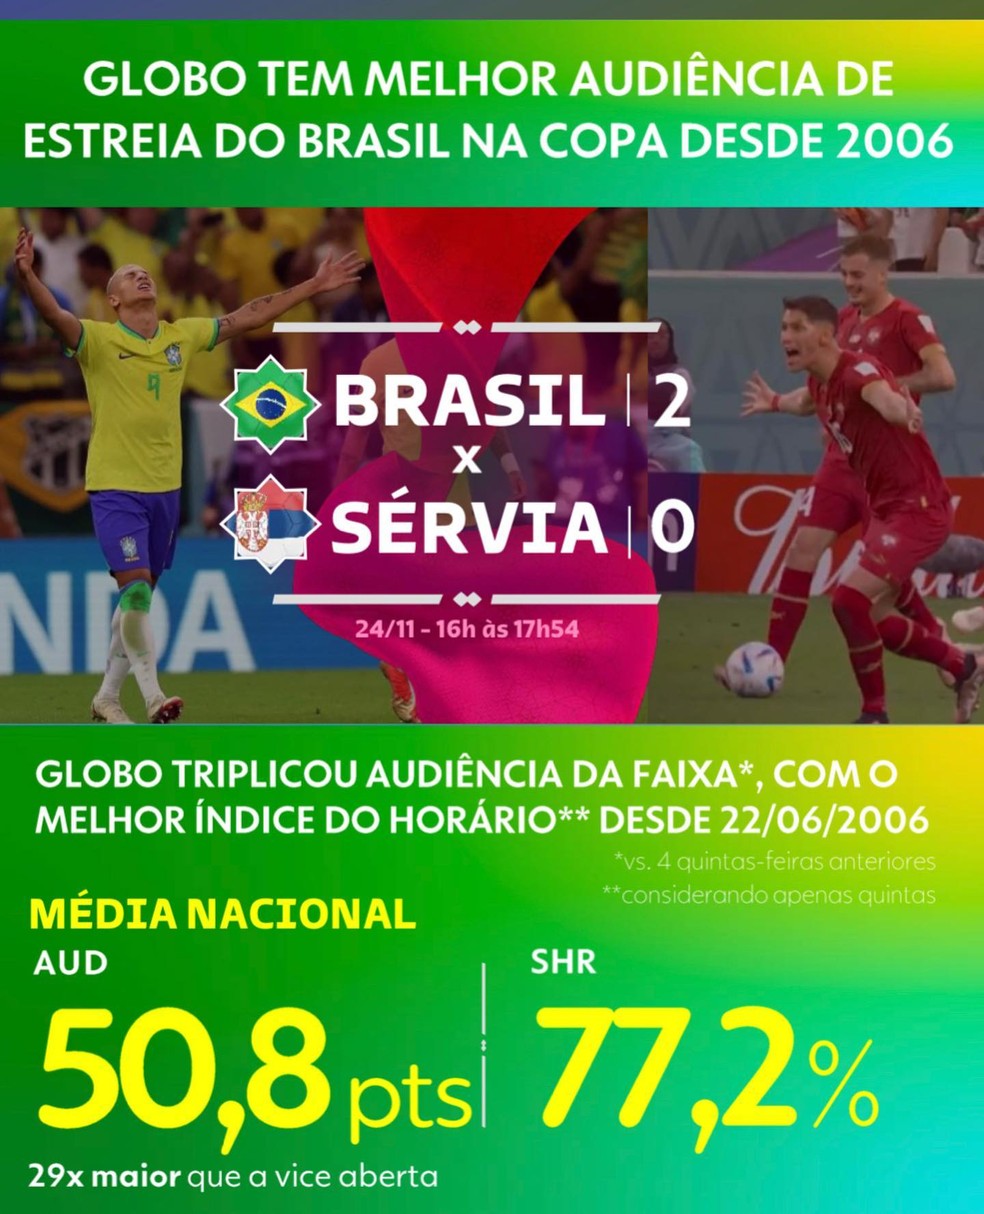 Adeus, Galvão? Veja todas as alternativas disponíveis para assistir aos  jogos do Brasil na Copa - Seu Dinheiro